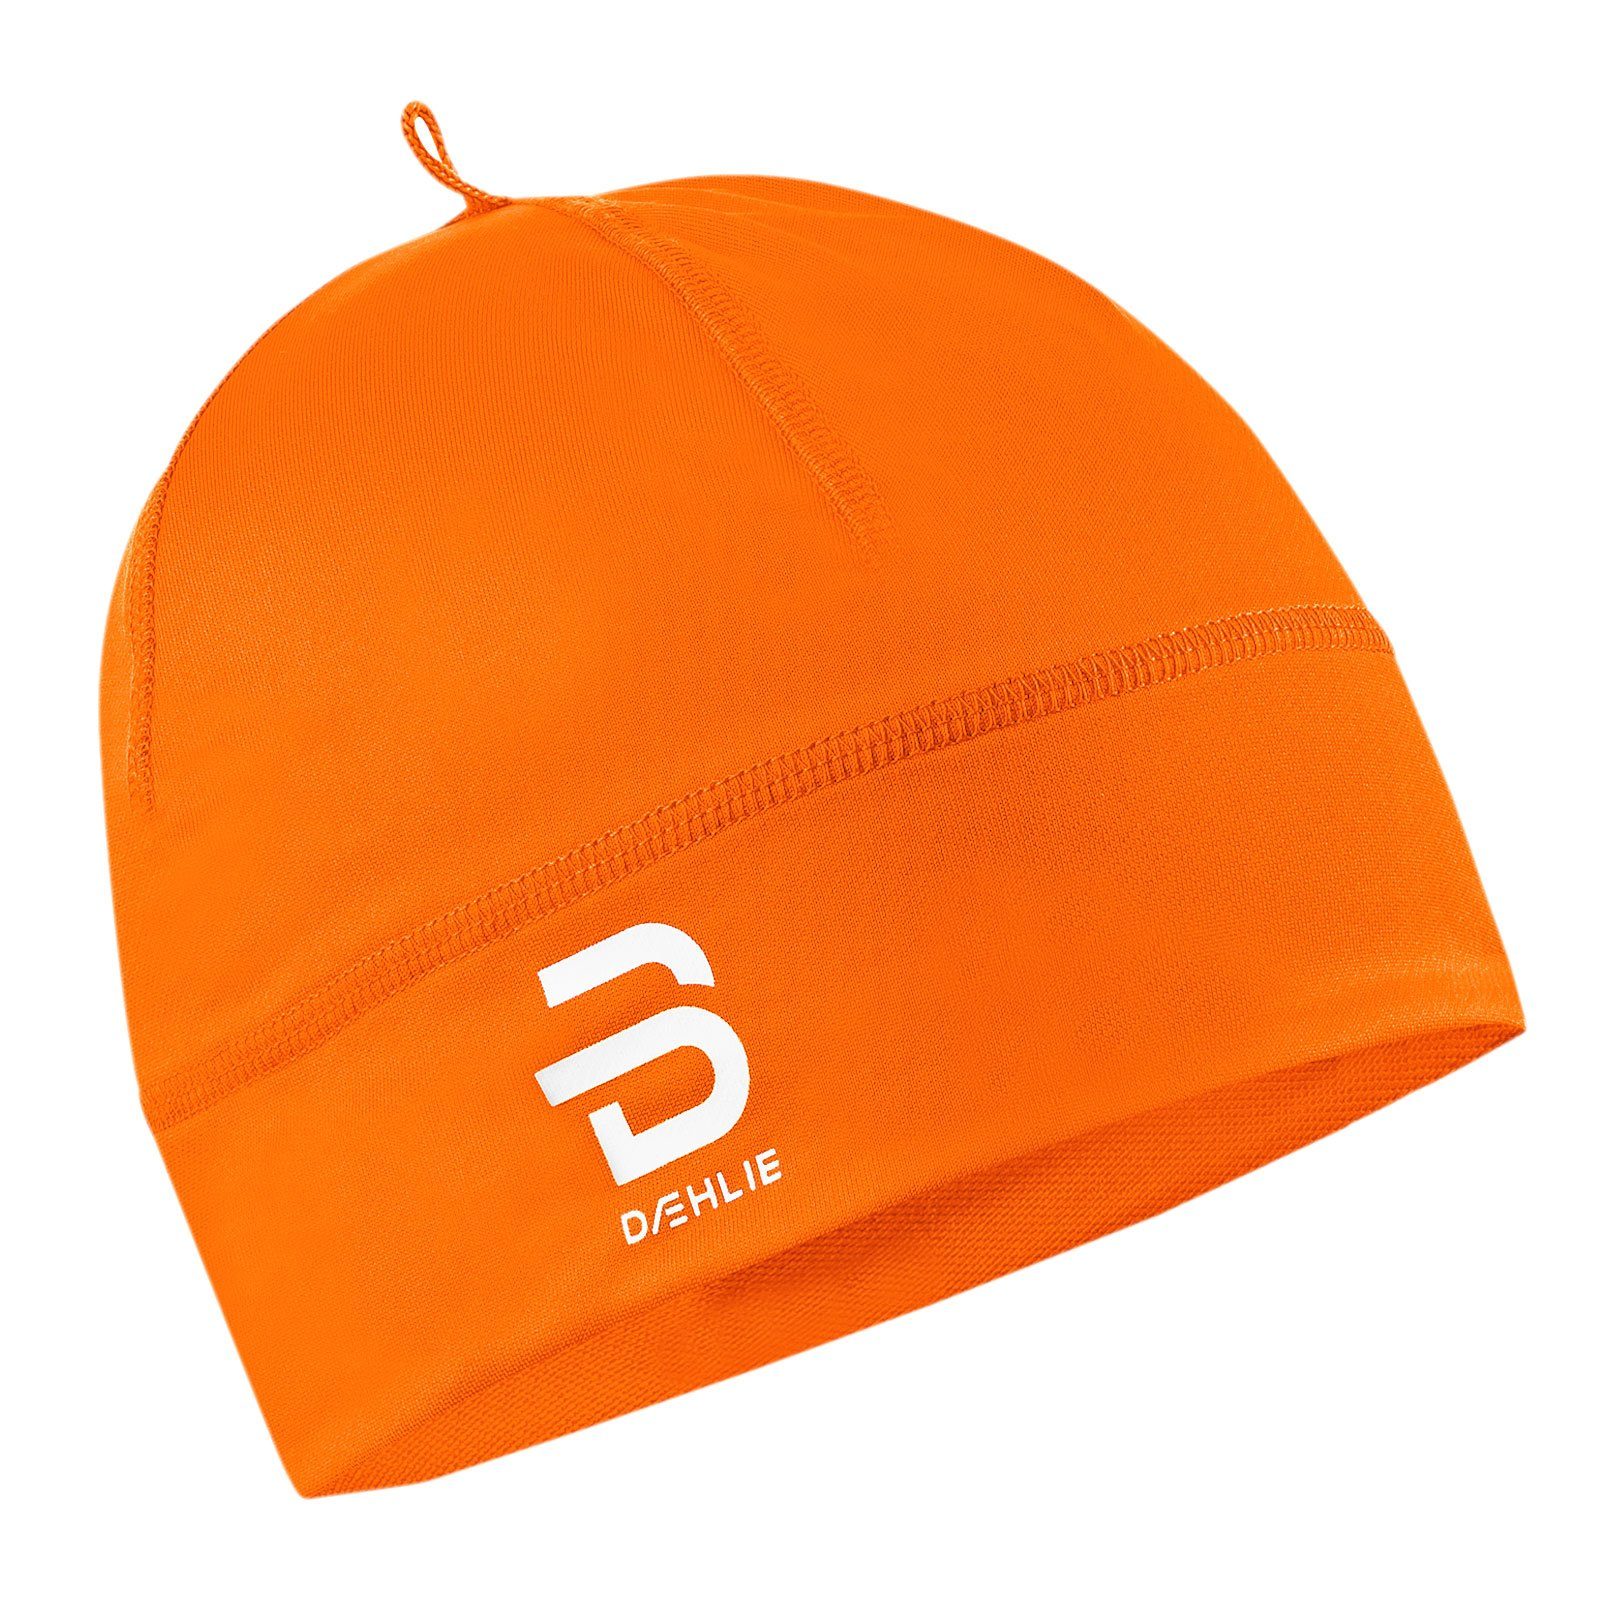 Logo Polyknit dekorativem DAEHLIE mit orange Skimütze Hat